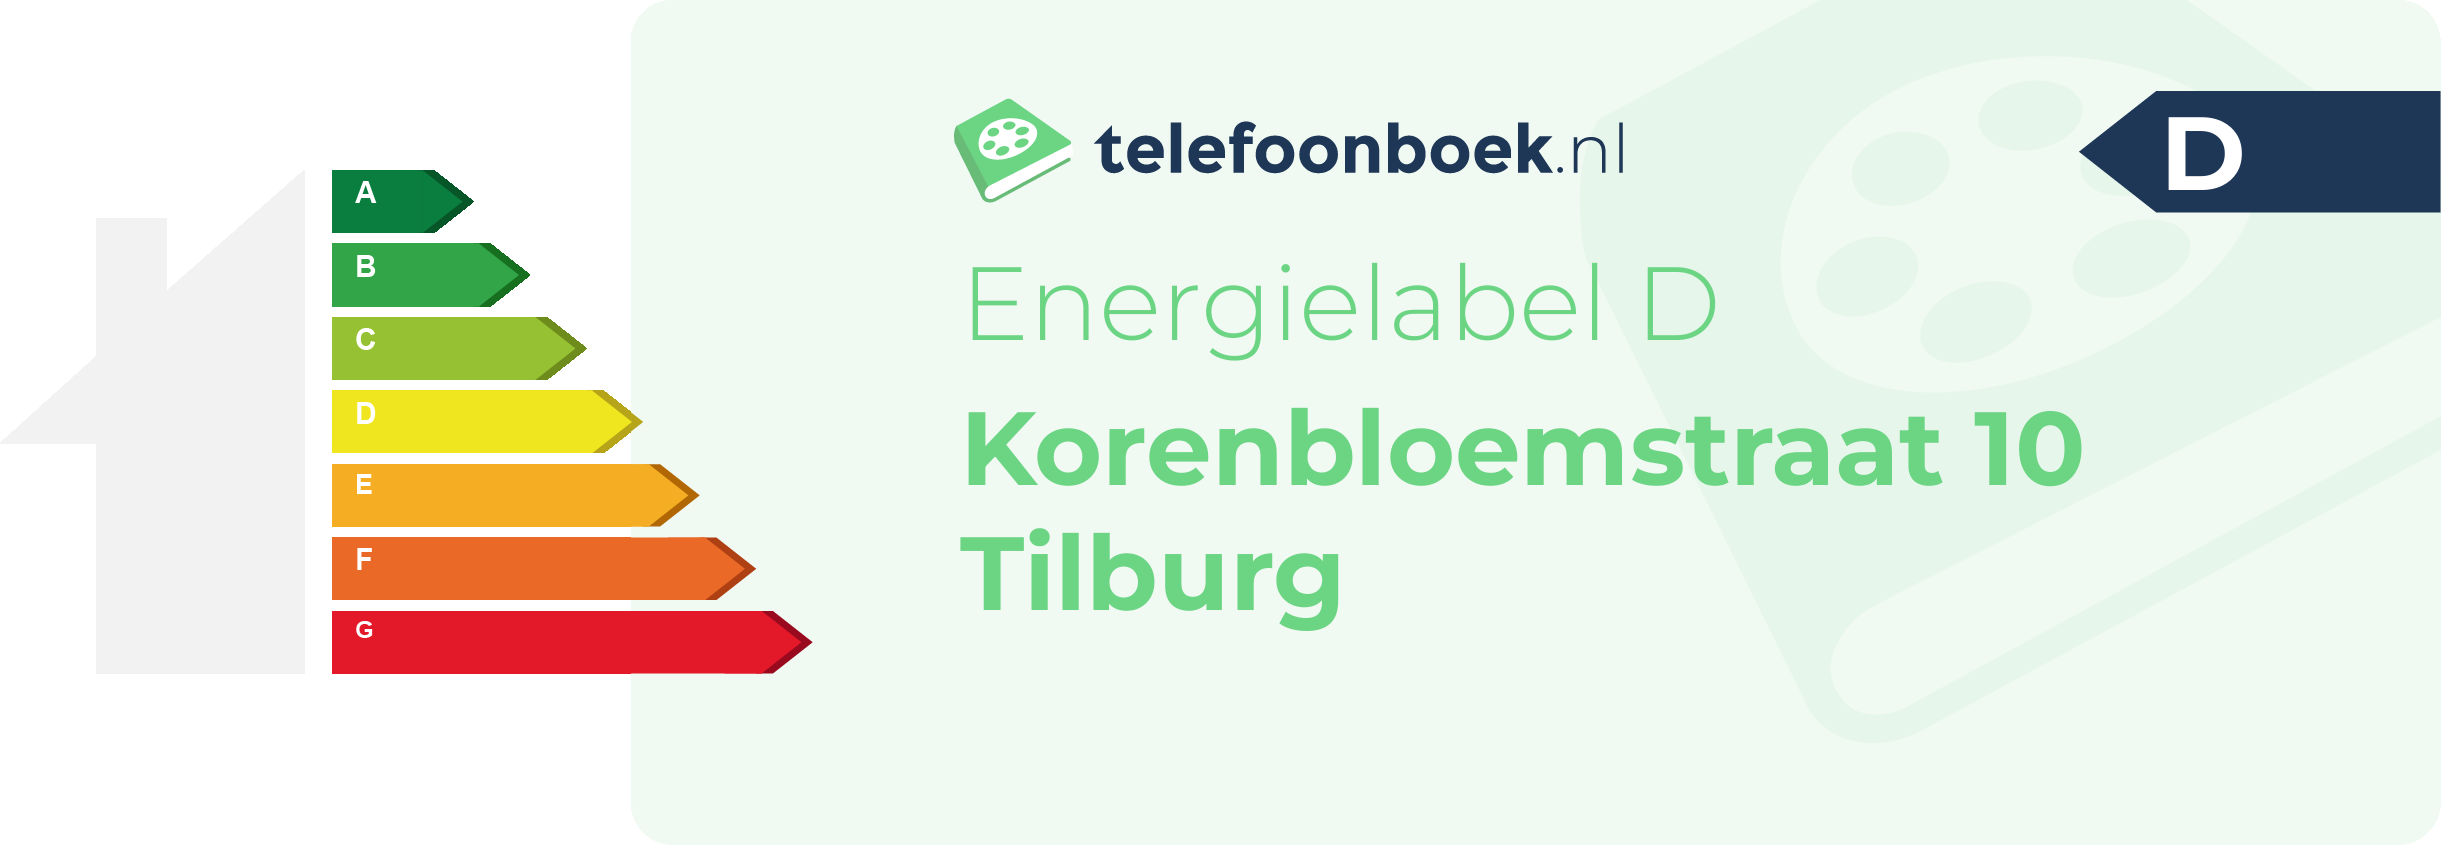 Energielabel Korenbloemstraat 10 Tilburg